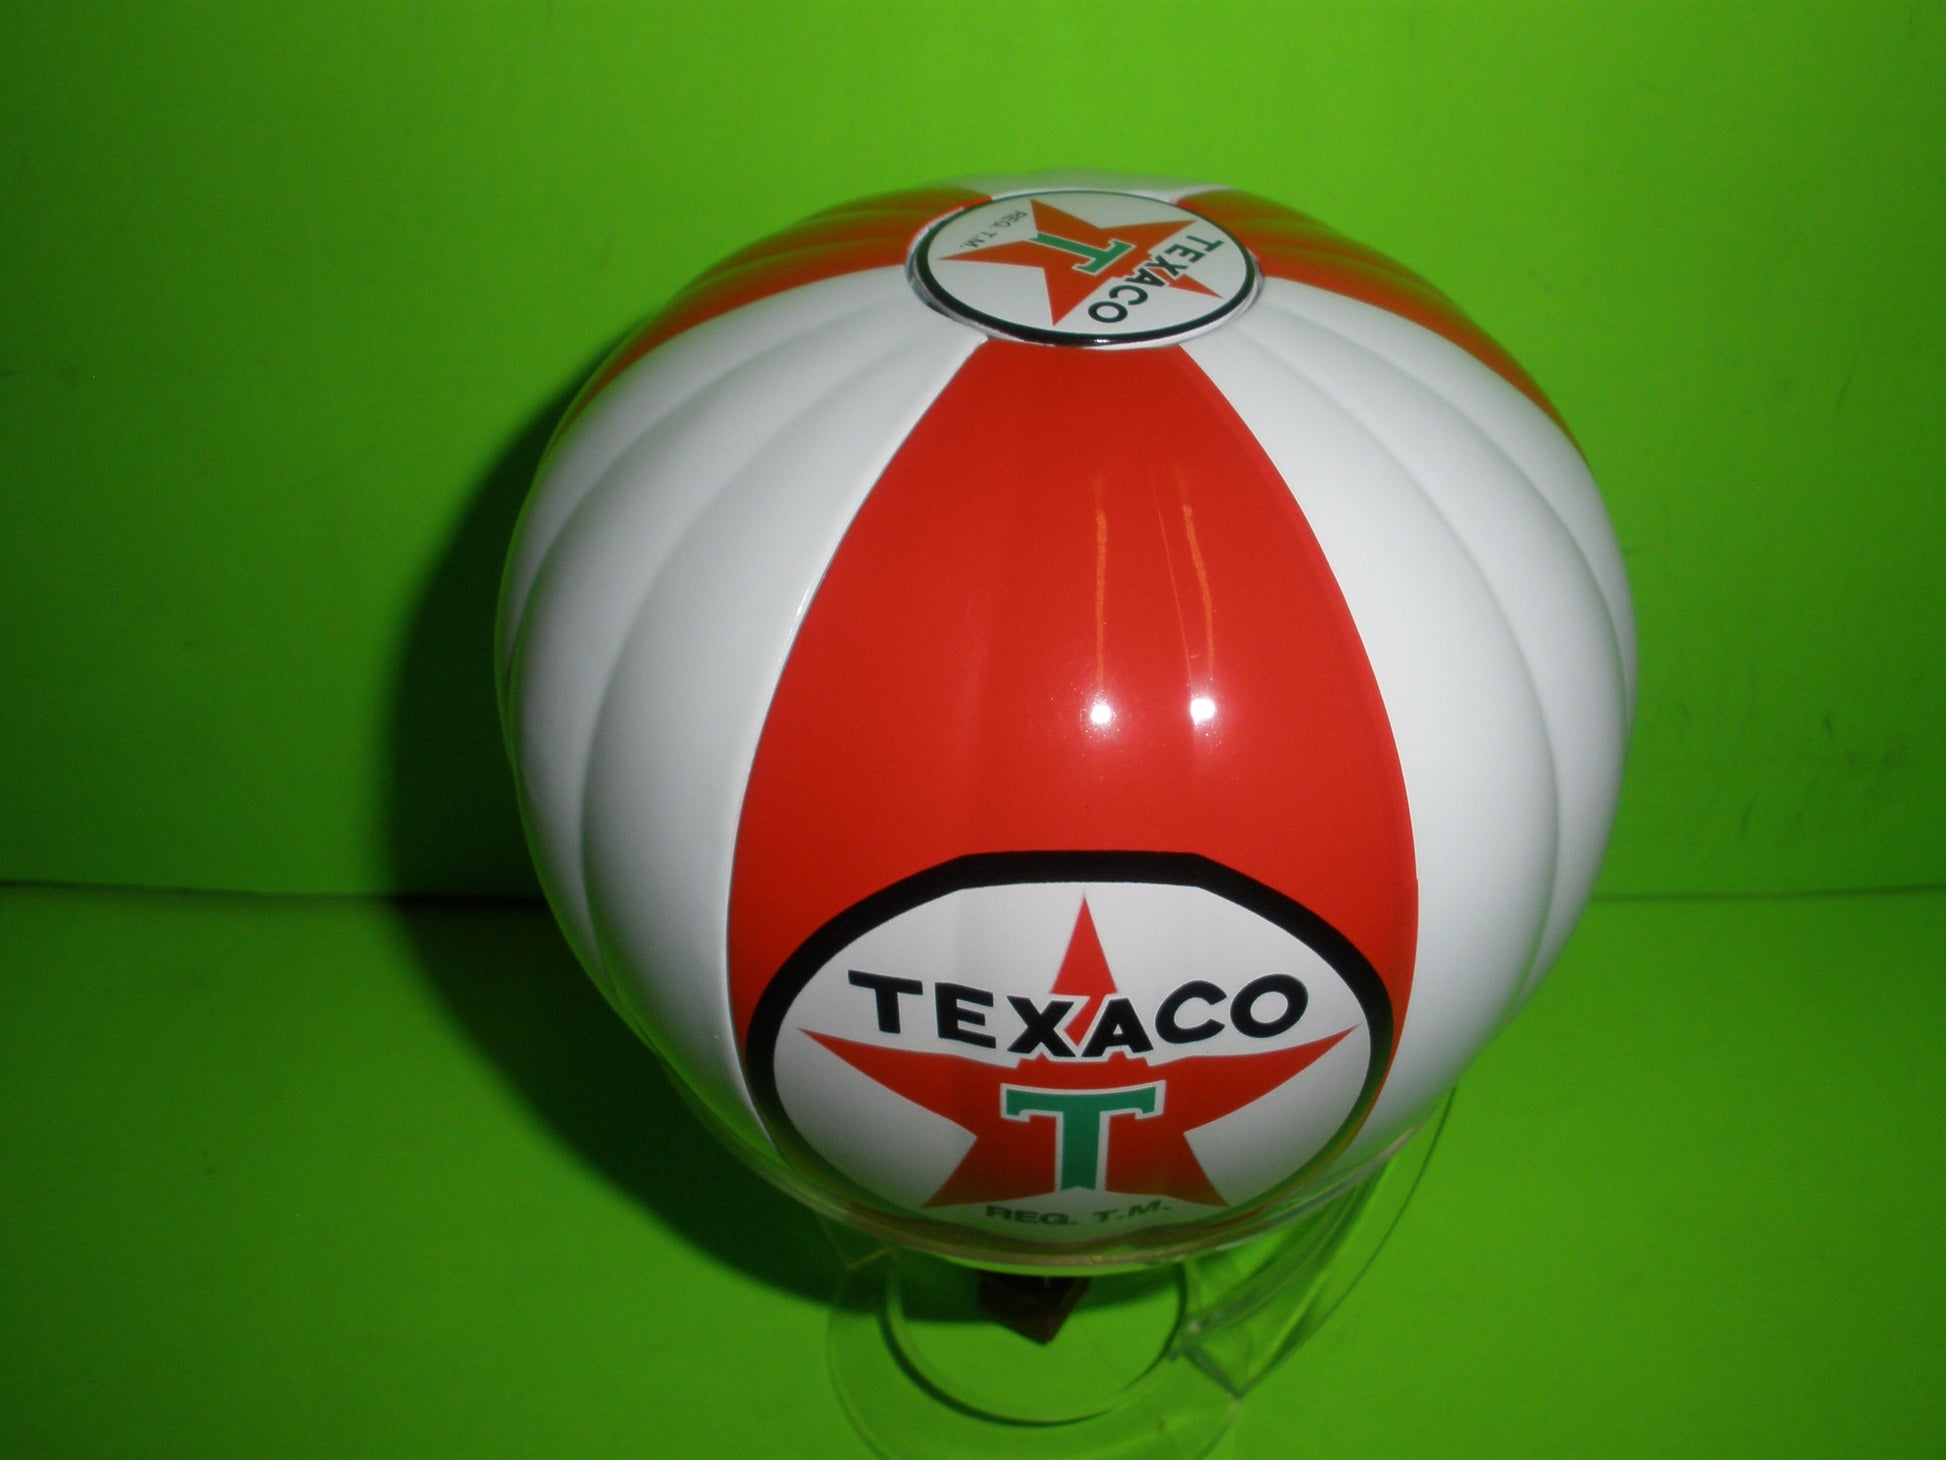 Texaco Hot Air Balloon Coin Bank